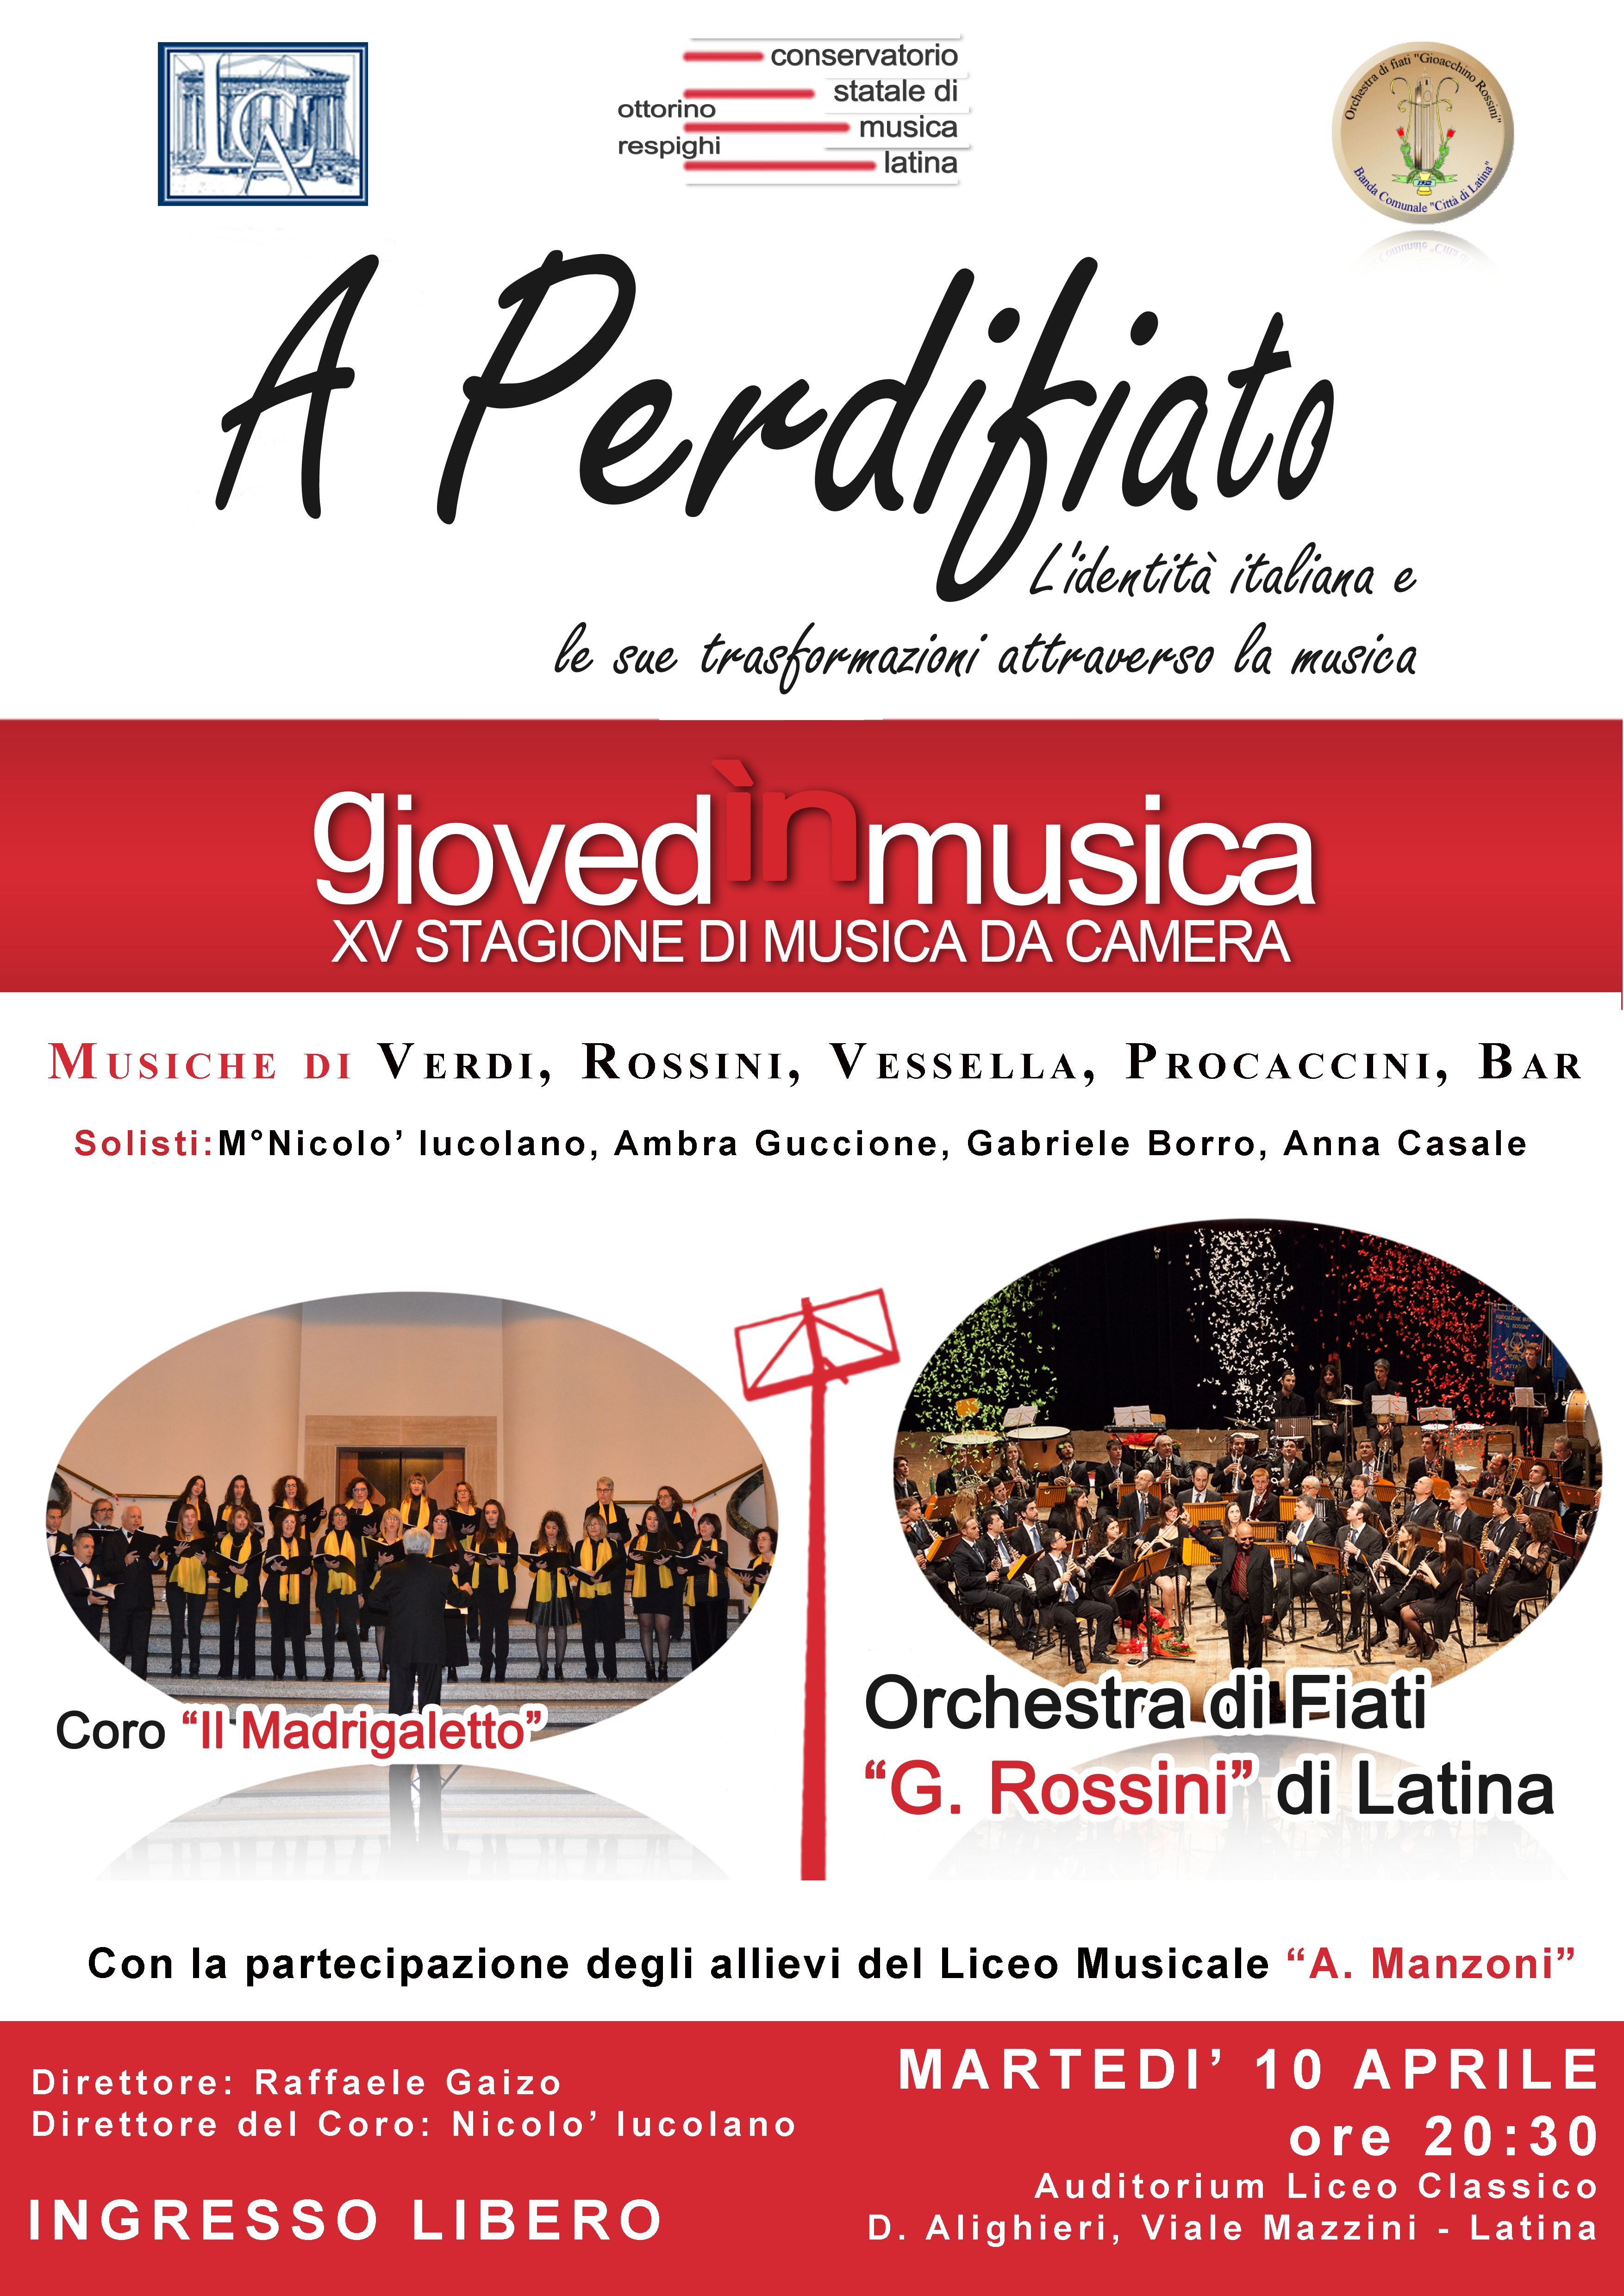 L’orchestra di fiati “G. Rossini” di Latina suona l’Italia che cambia